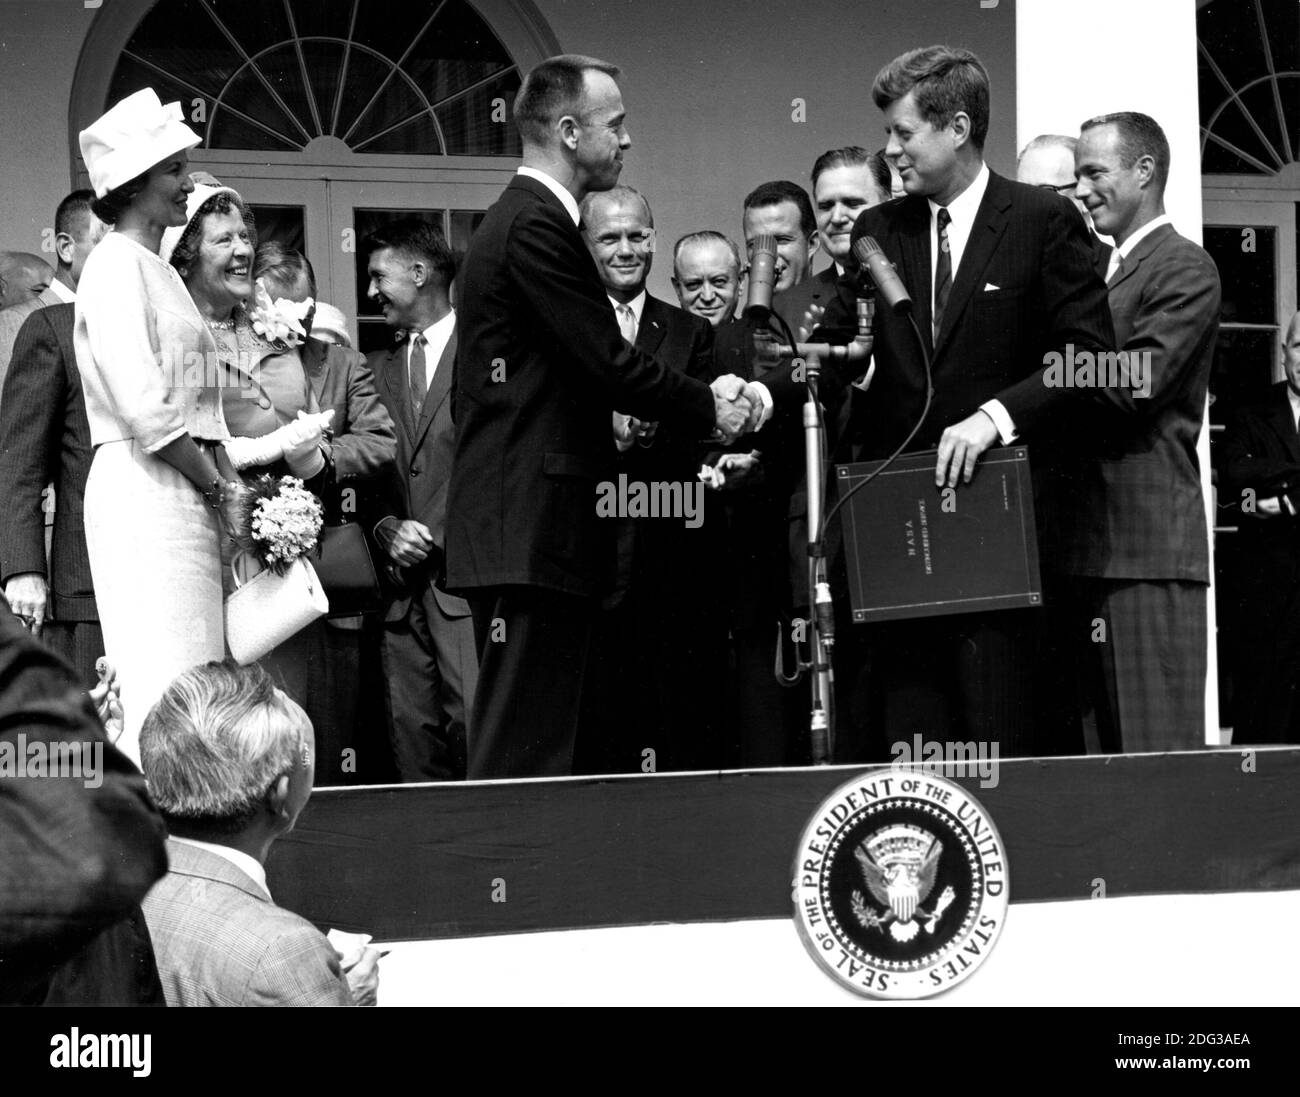 US-Präsident John F. Kennedy gratuliert Astronaut Alan B. Shepard, Jr., dem ersten Amerikaner im All, zu seiner historischen Fahrt mit der Raumsonde Freedom 7 am 5. Mai 1961 und überreicht ihm am 6. Mai den Distinguished Service Award der National Aeronautics and Space Administration (NASA) in Washington, DC, USA. 1961. Shepard's Frau, Louise (links in weißem Kleid und Hut), und seine Mutter waren anwesend sowie die anderen sechs Merkur-Astronauten, einschließlich Colonel John H. Glenn, Jr. und andere NASA-Officals, einige im Hintergrund sichtbar.. Foto von NASA via CNP Stockfoto